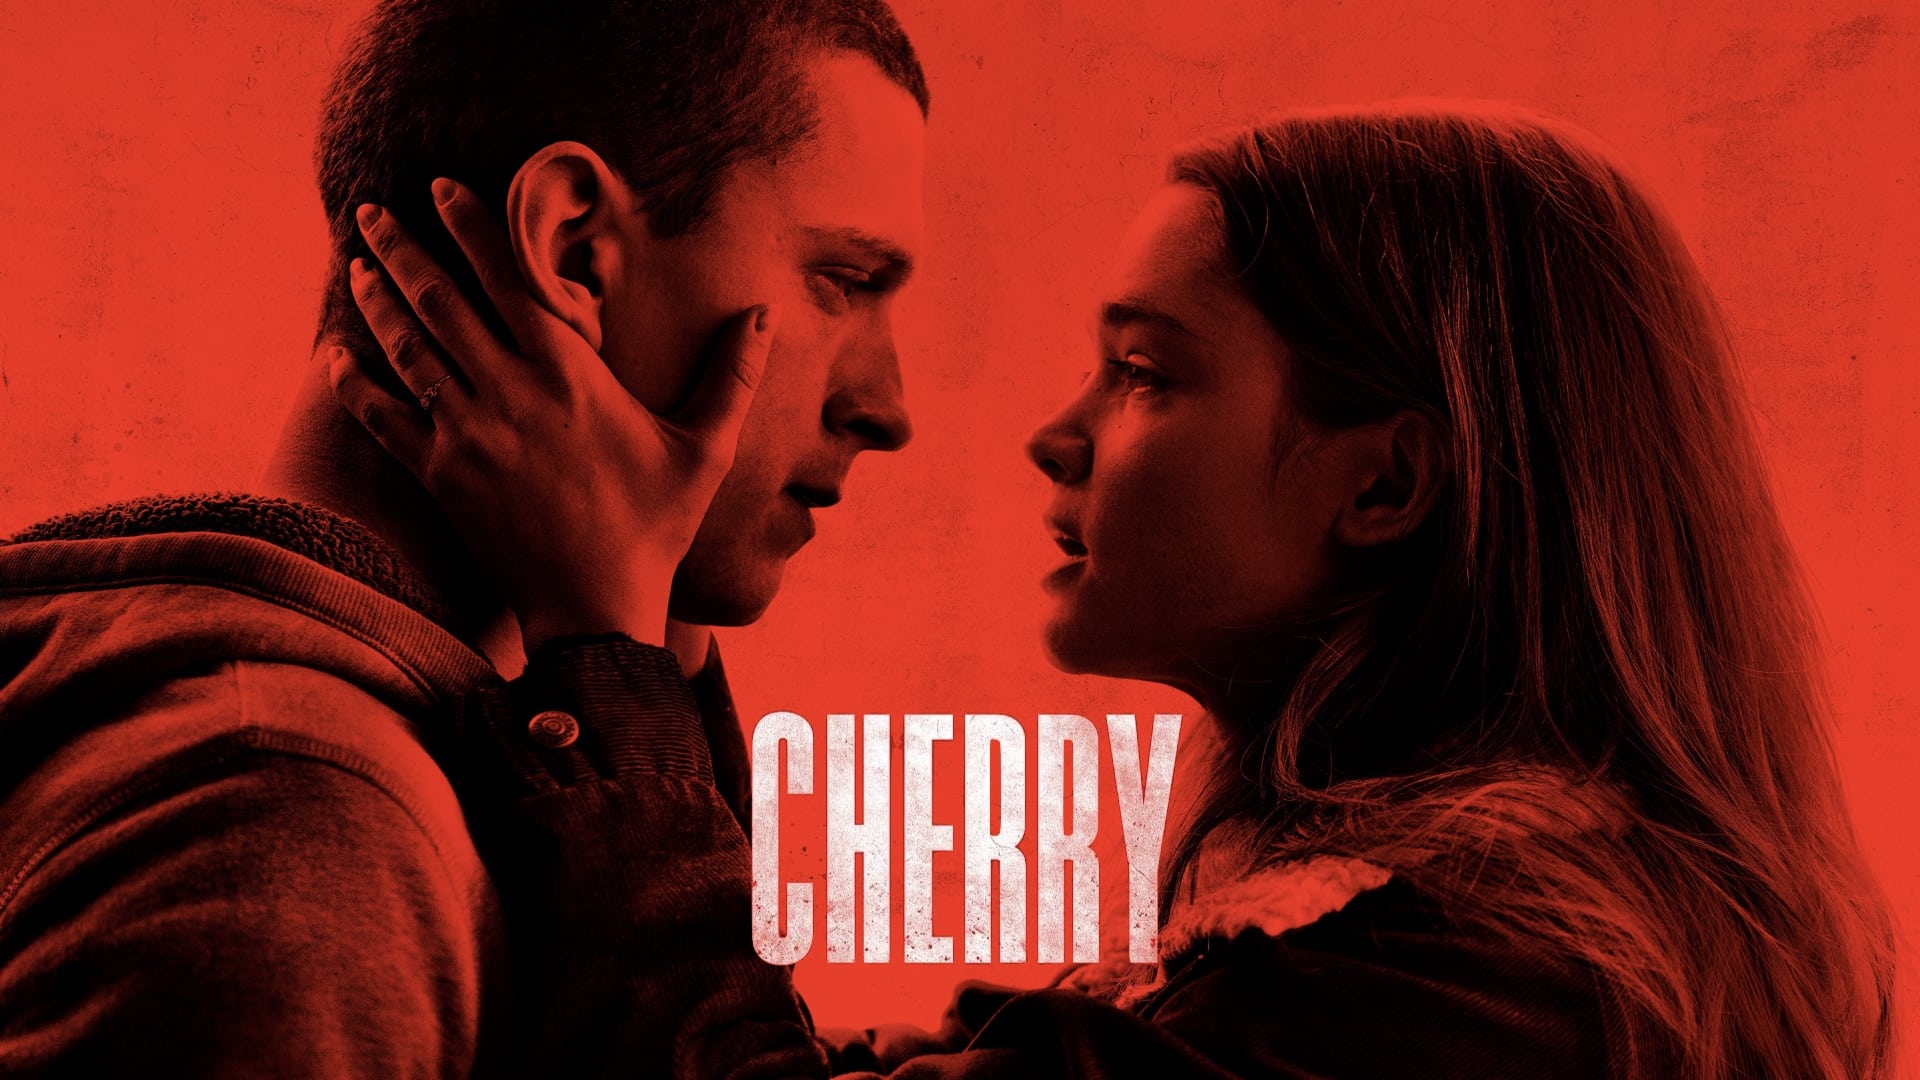 Cherry - Das Ende aller Unschuld (2021)